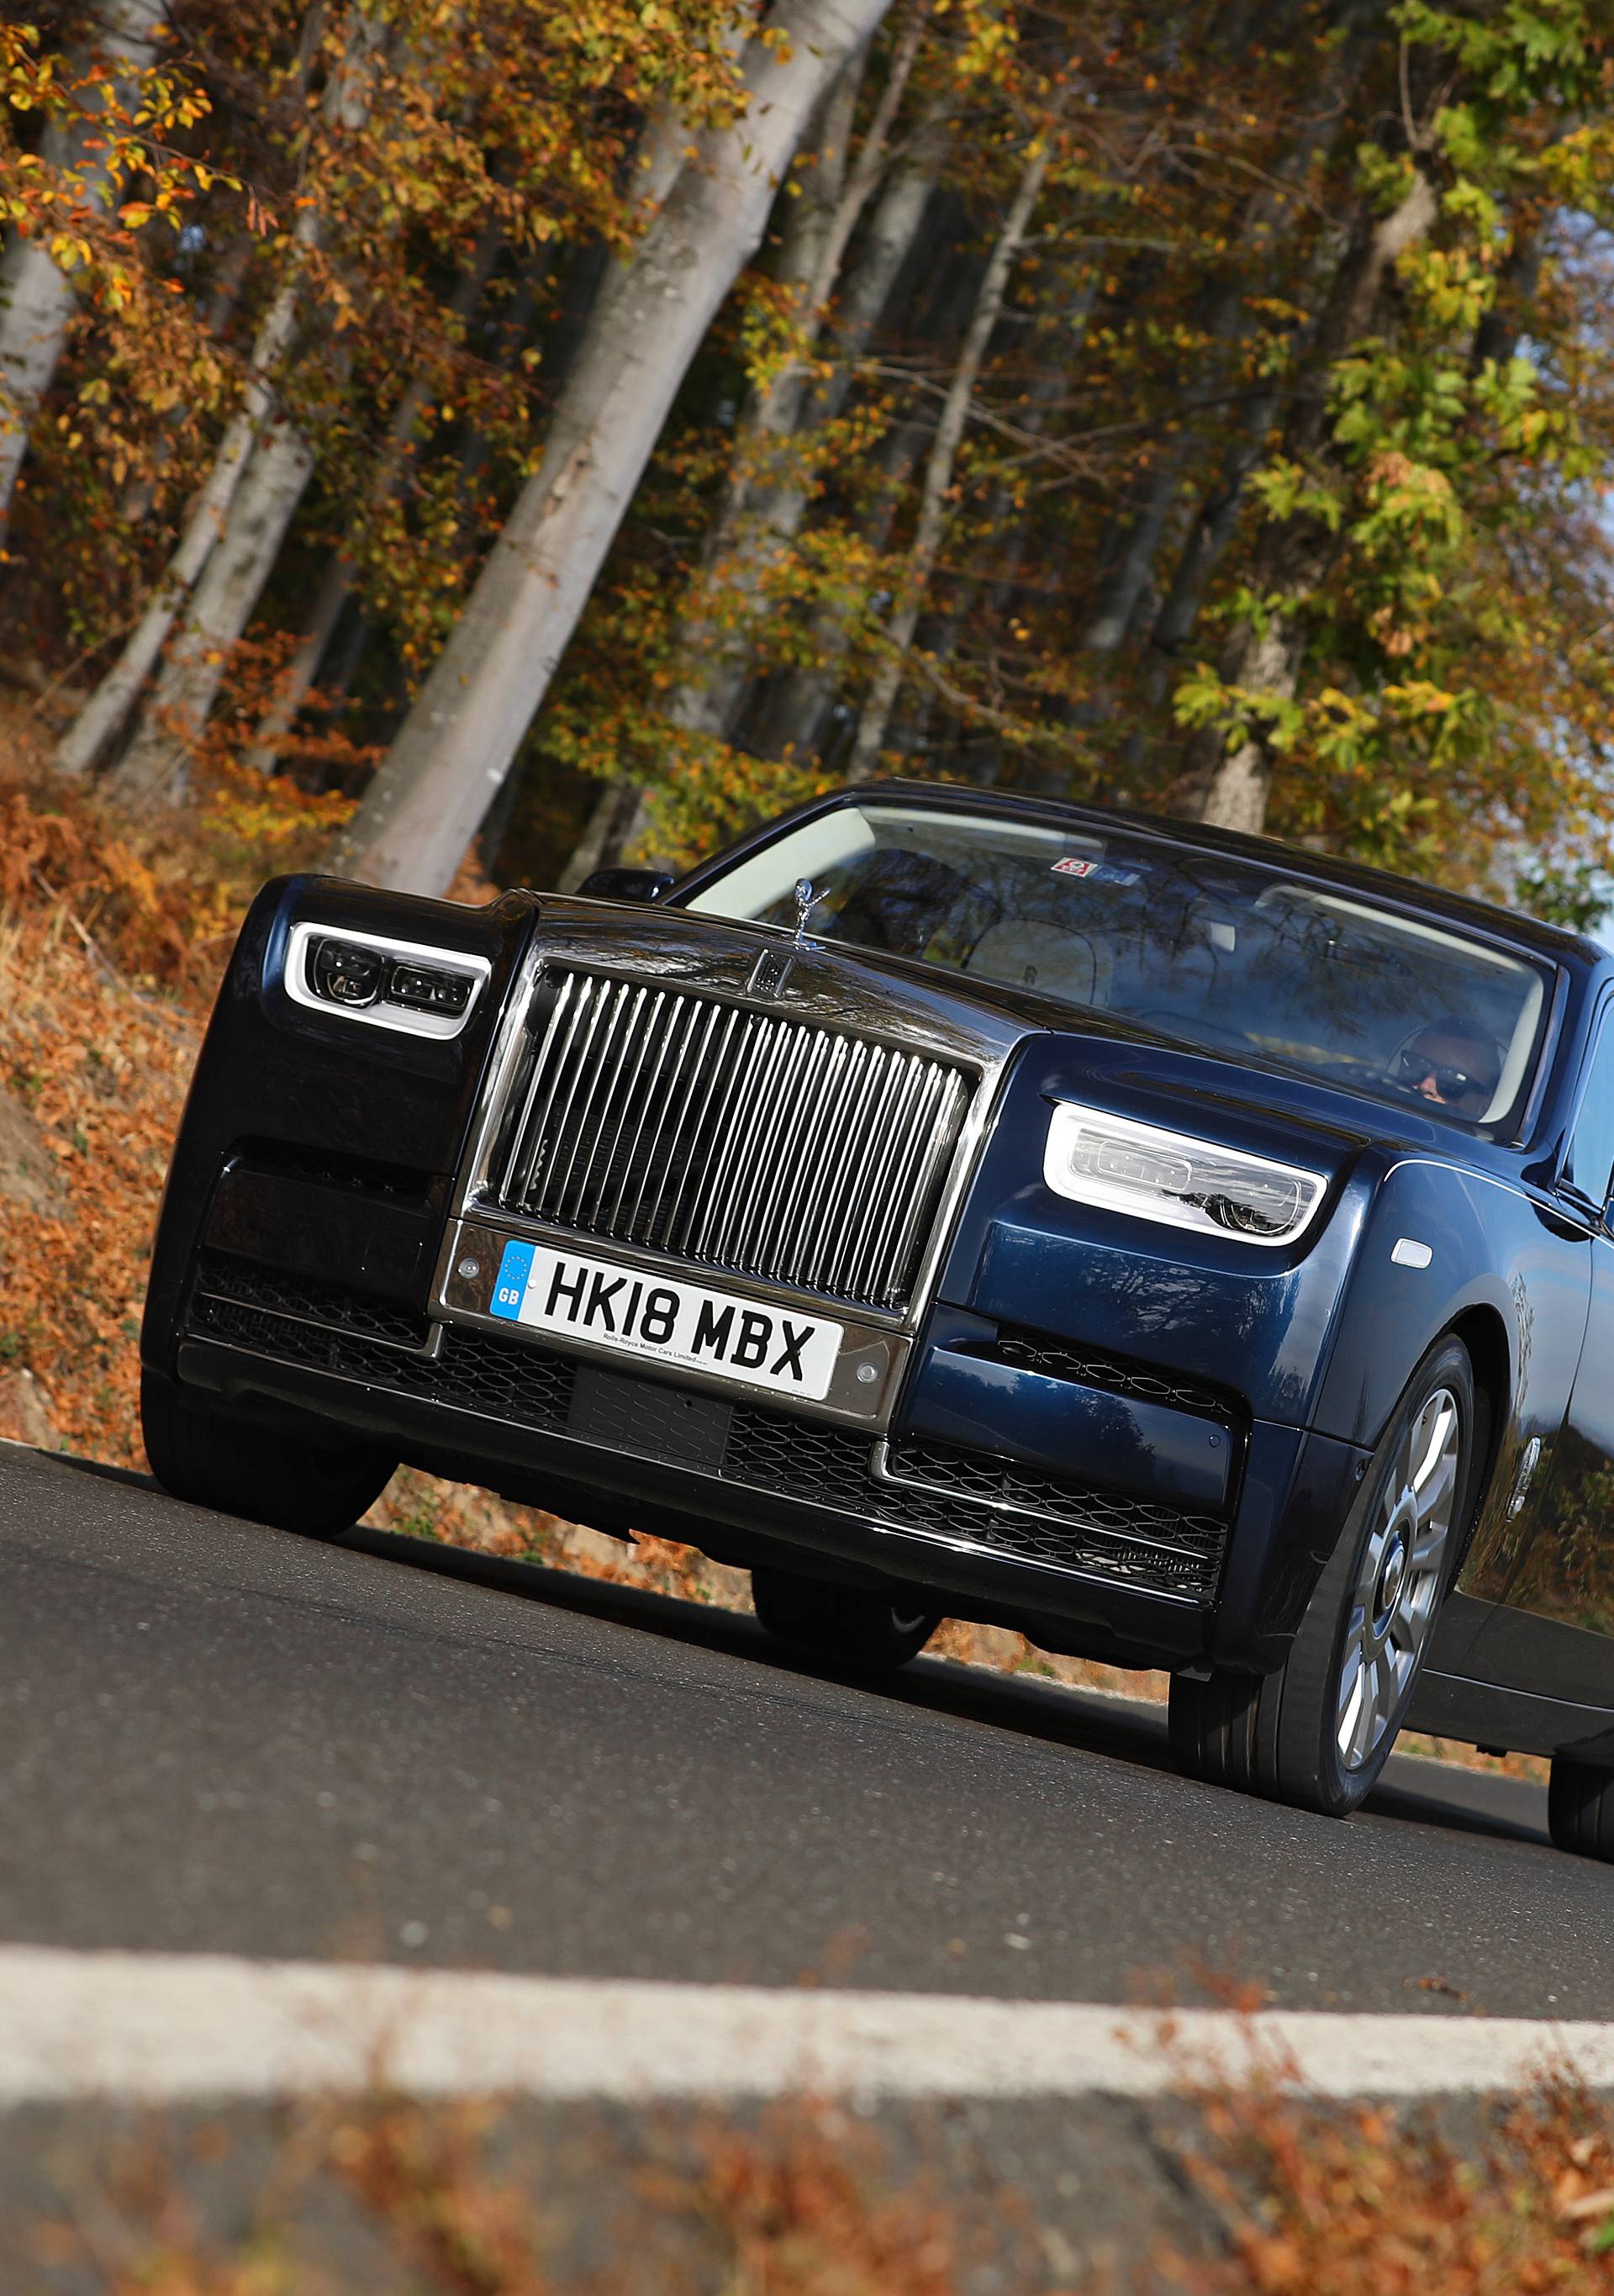 Luksuz od milijun eura: Vozili smo novi Rolls-Royce Phantom